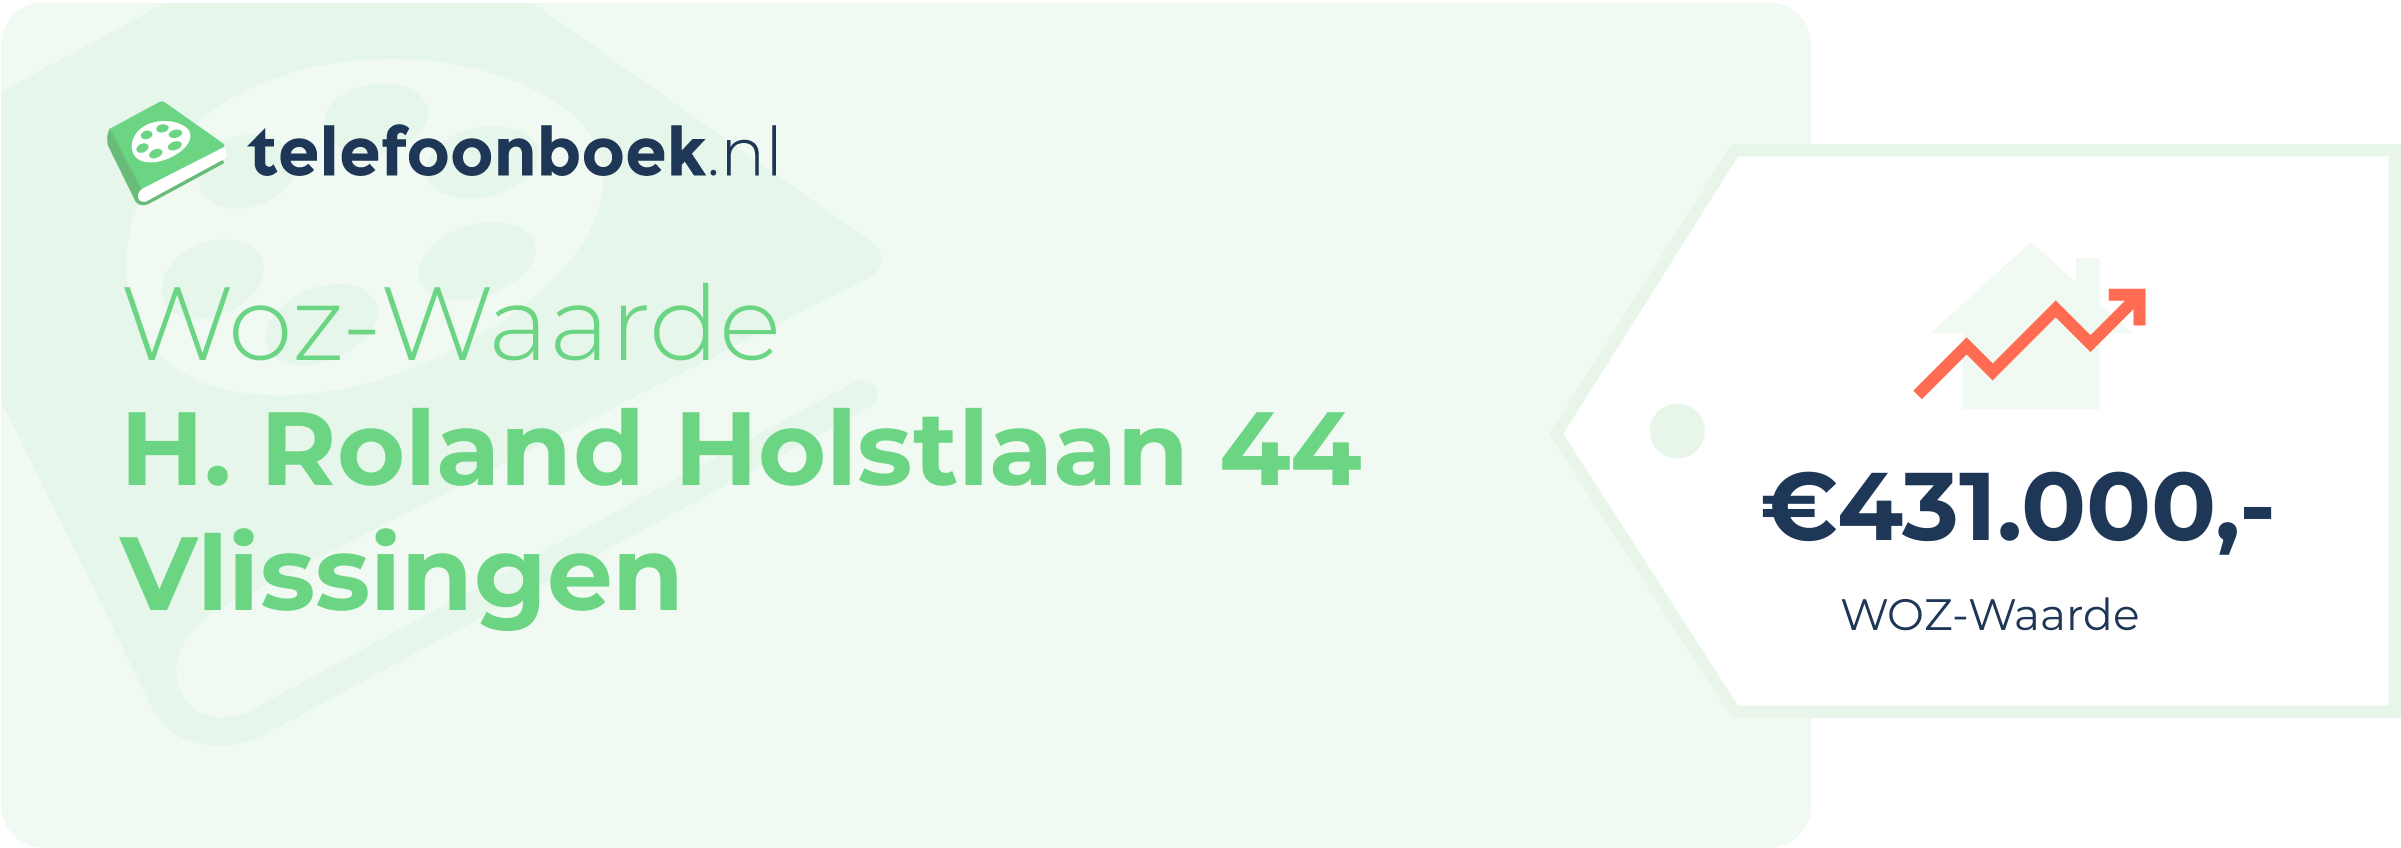 WOZ-waarde H. Roland Holstlaan 44 Vlissingen